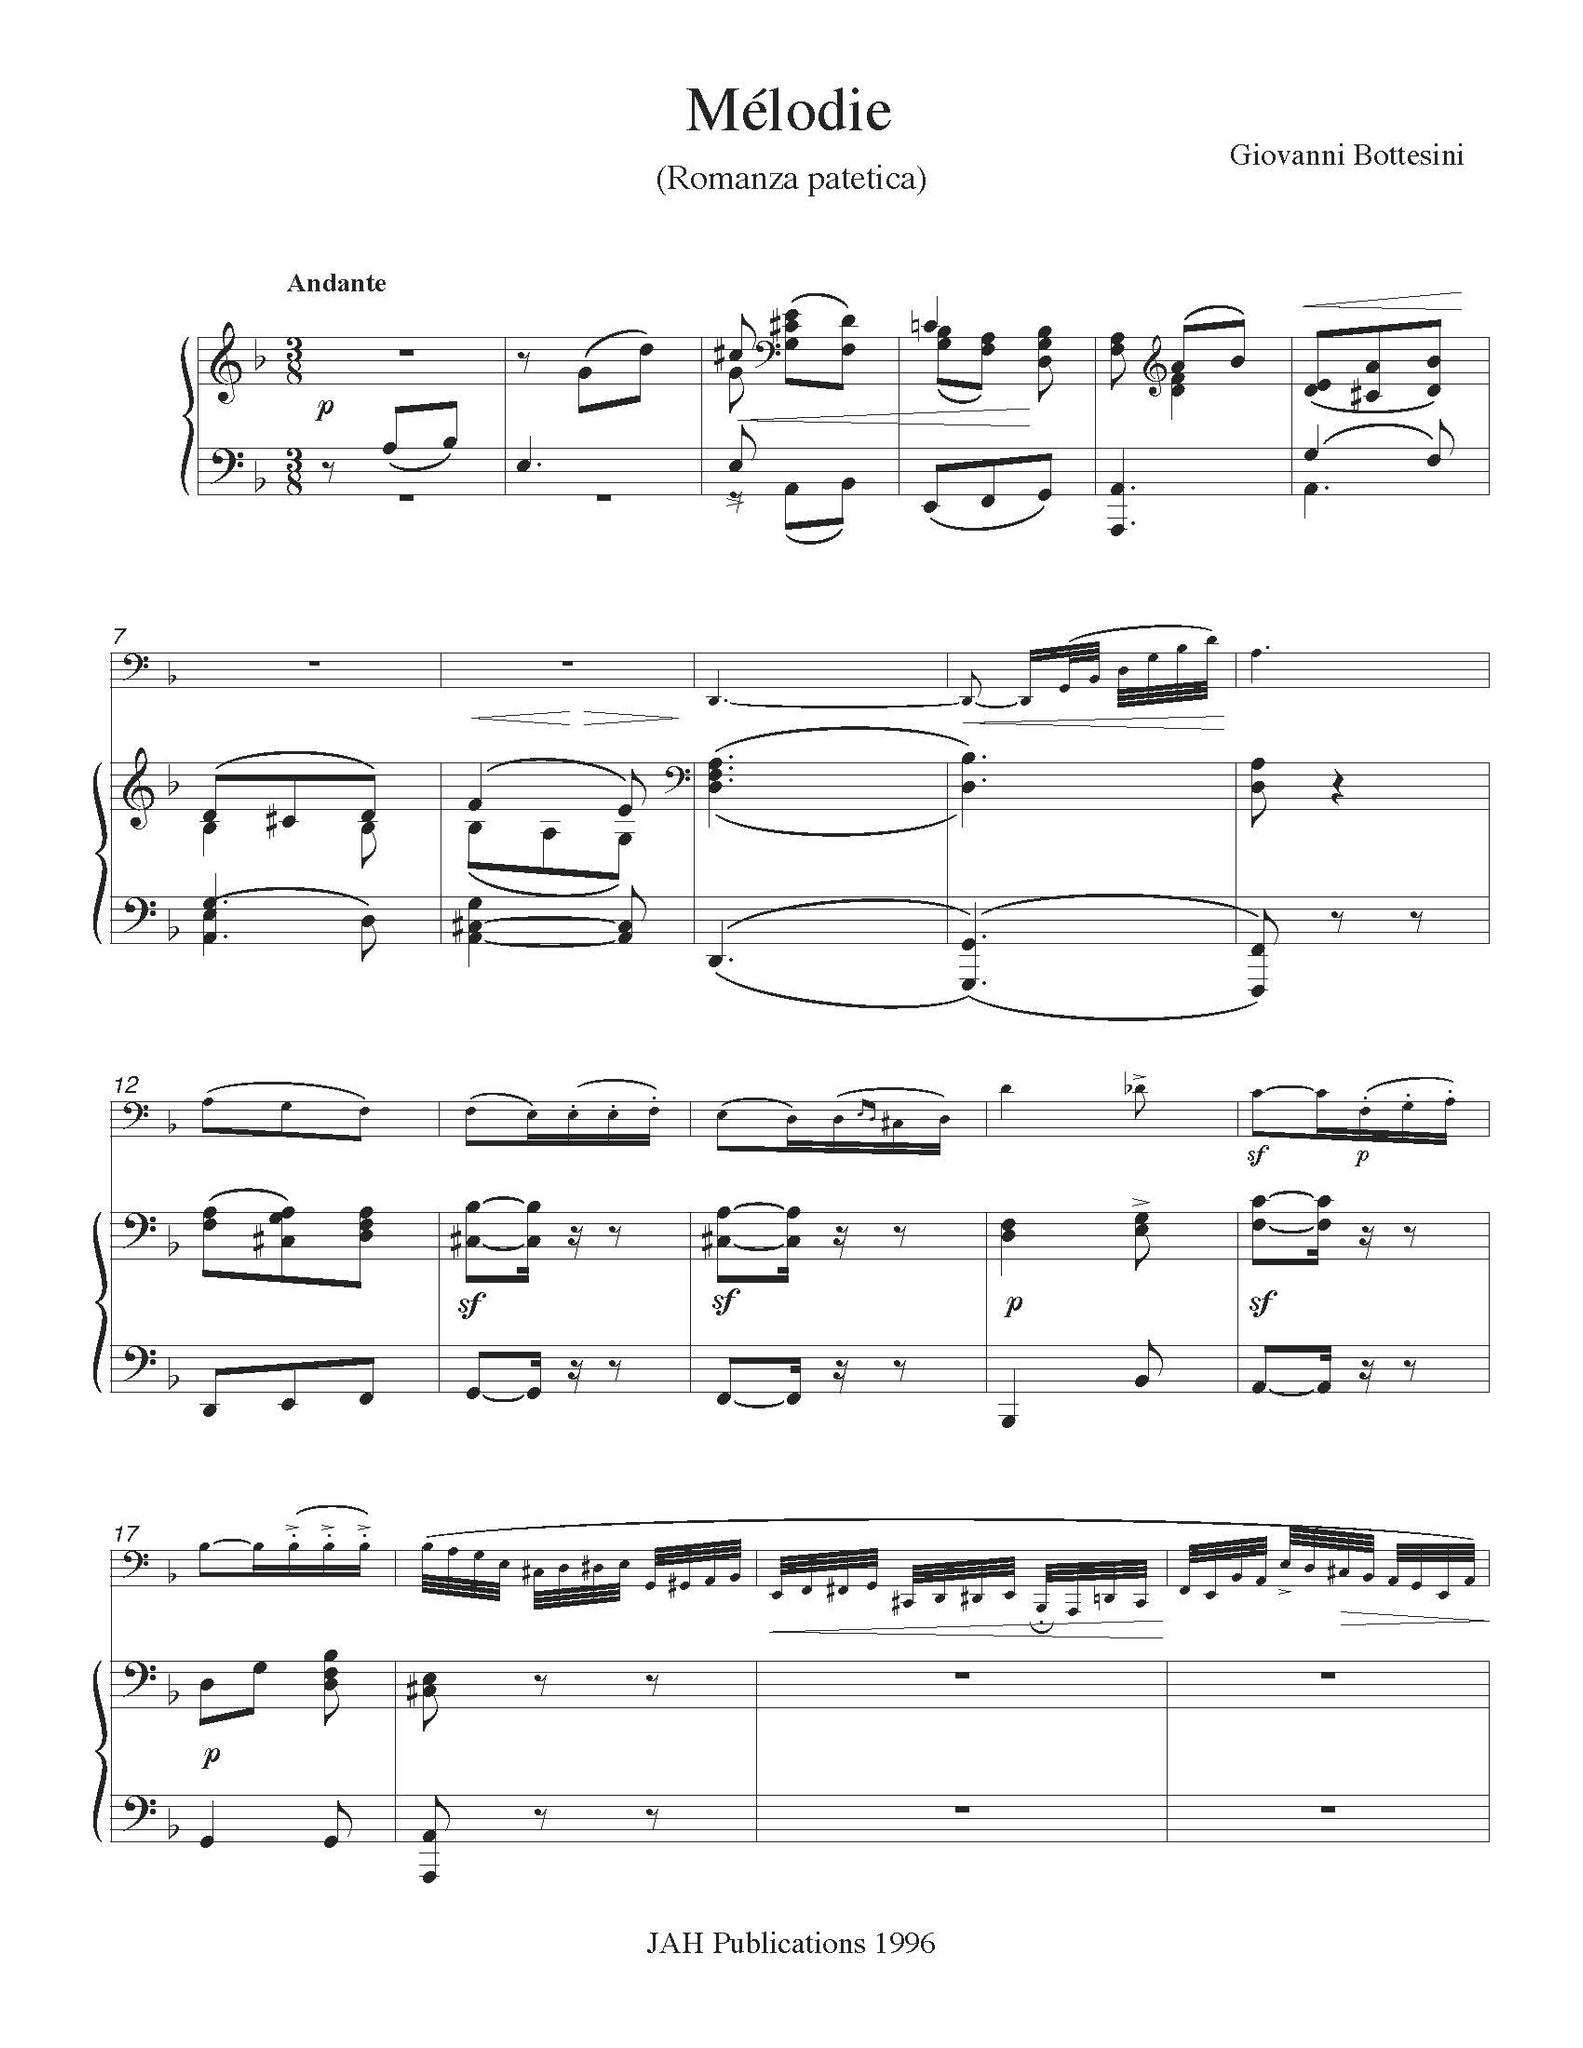 Bottesini Melody Romanza orchestra tuning page 1